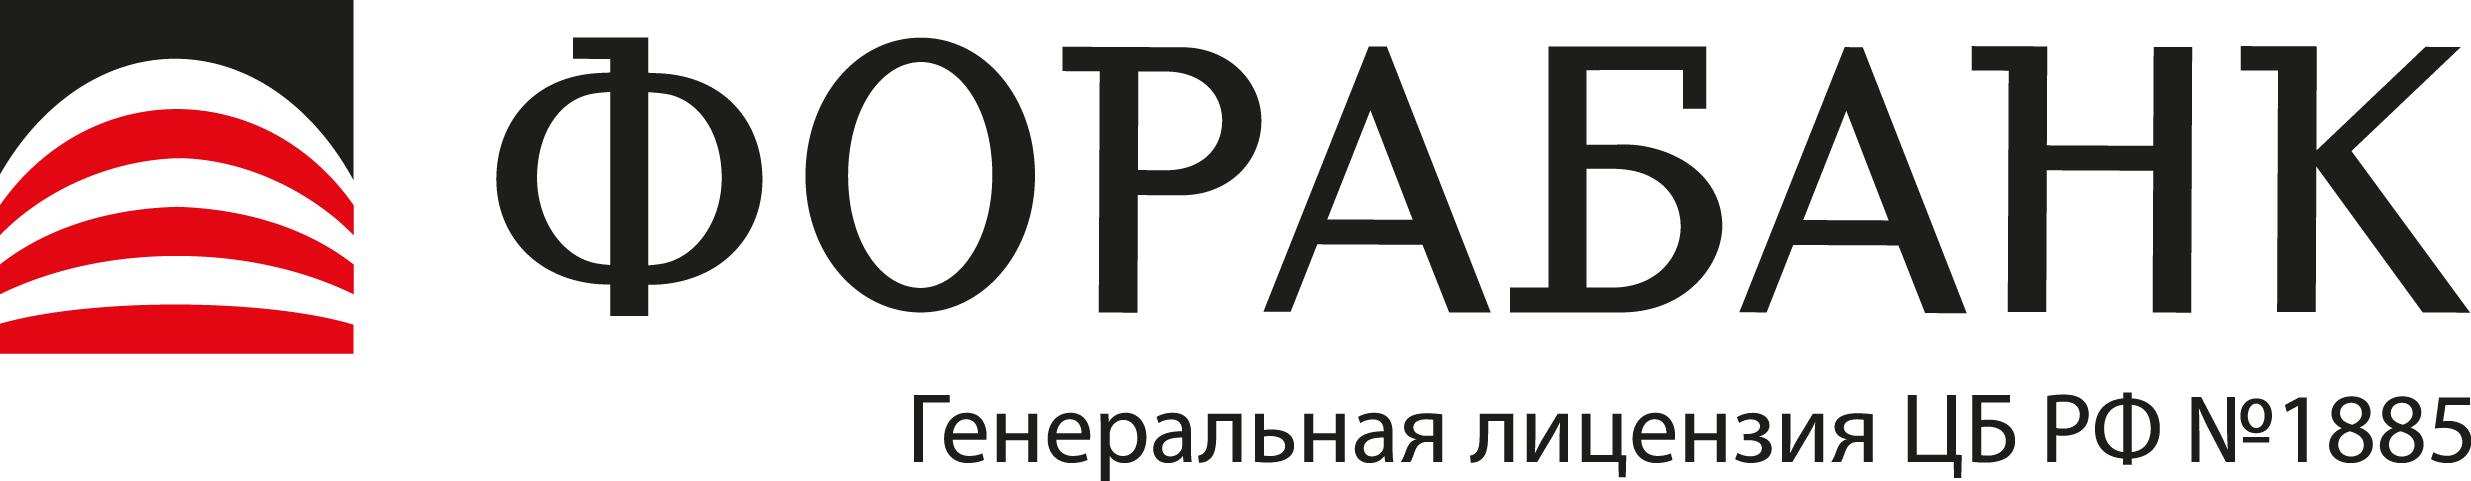 Фора-Банк откроет 10 новых отделений в России в 2023 году 